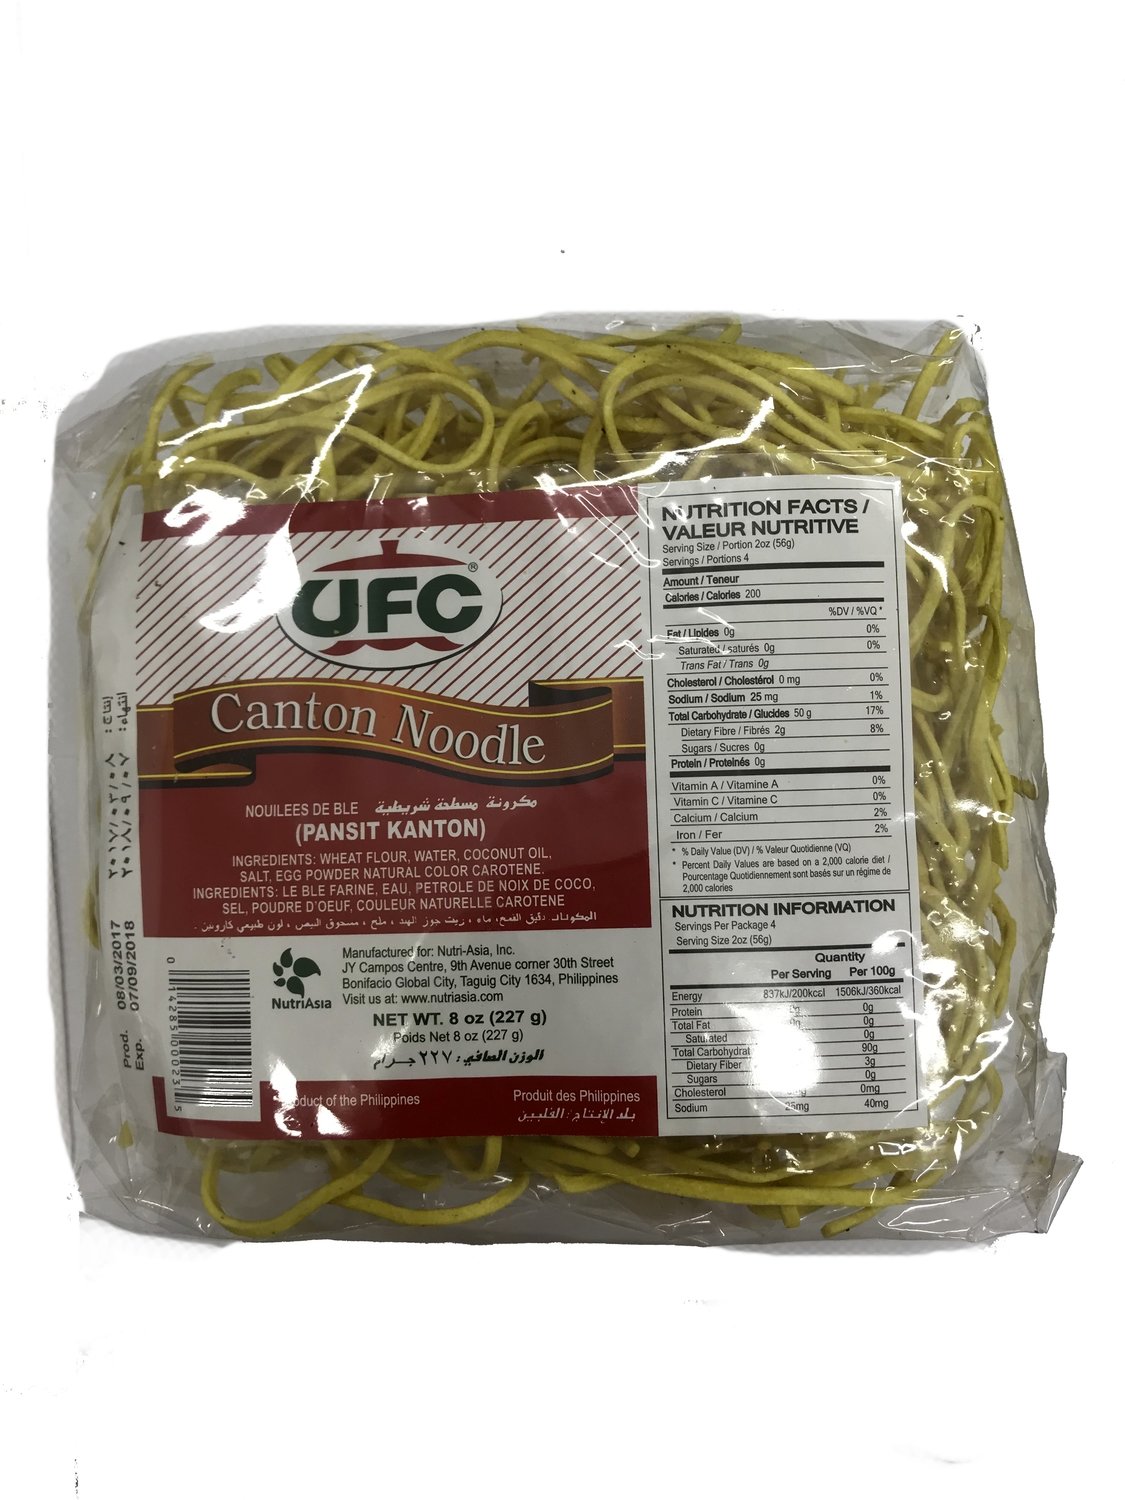 UFC Canton Noodle 227g